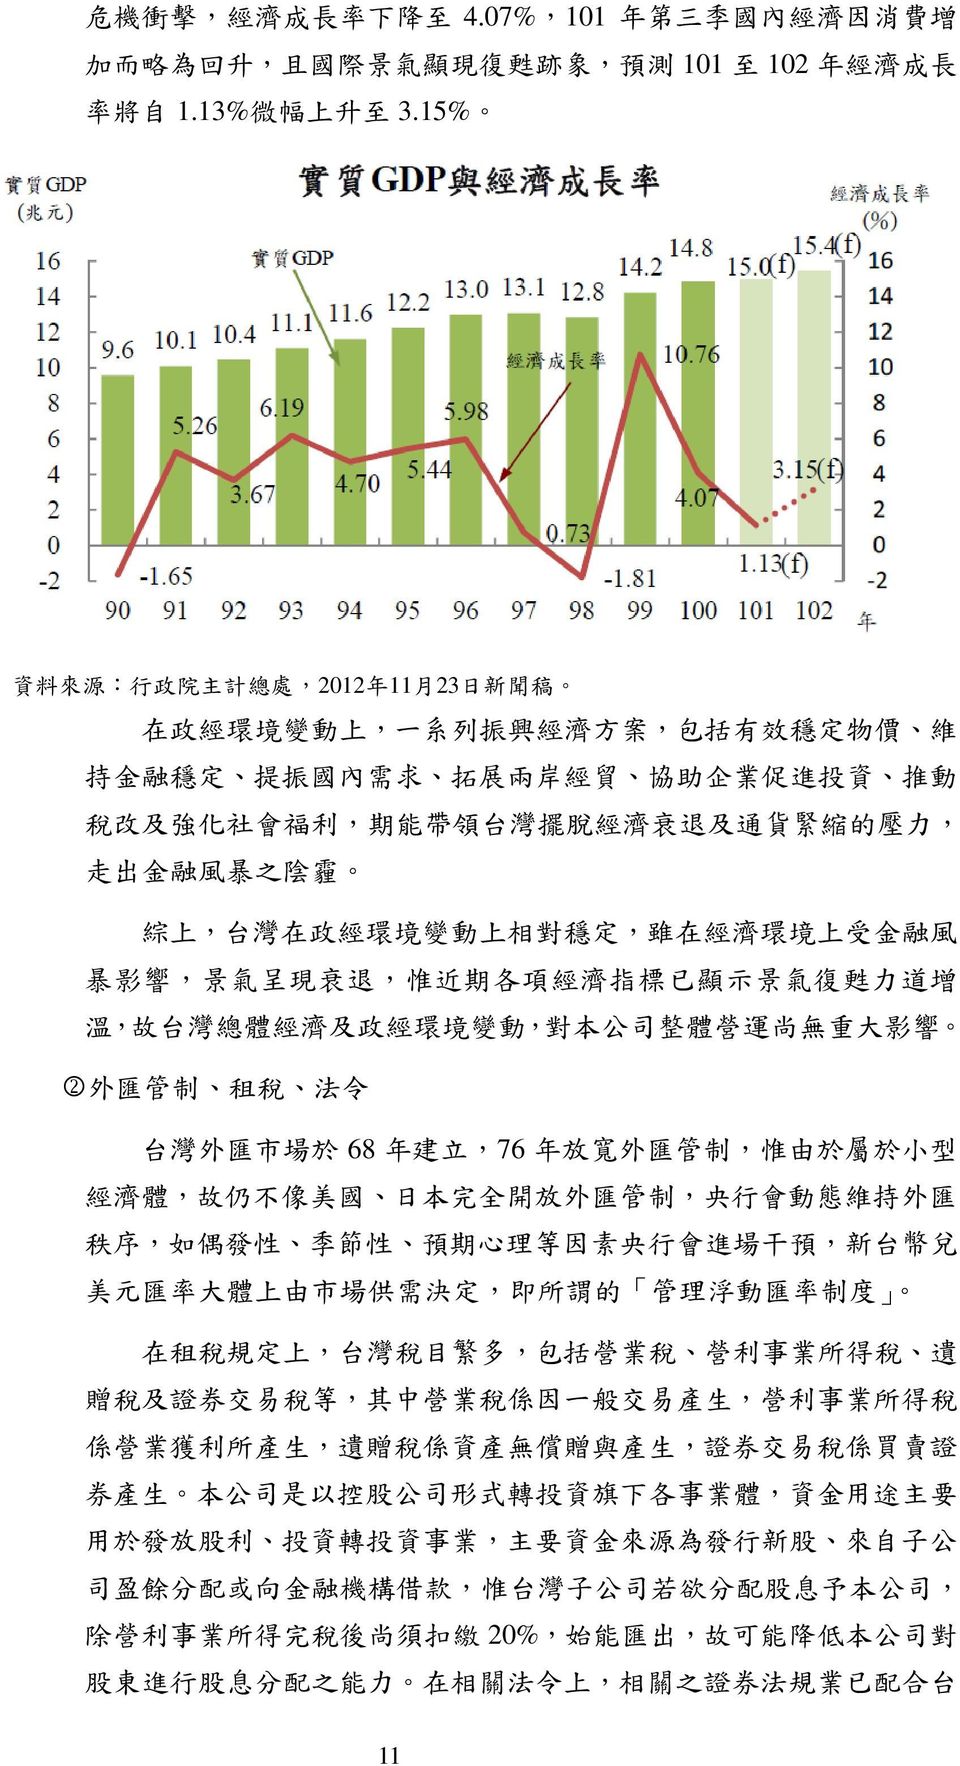 退 及 通 貨 緊 縮 的 壓 力, 走 出 金 融 風 暴 之 陰 霾 綜 上, 台 灣 在 政 經 環 境 變 動 上 相 對 穩 定, 雖 在 經 濟 環 境 上 受 金 融 風 暴 影 響, 景 氣 呈 現 衰 退, 惟 近 期 各 項 經 濟 指 標 已 顯 示 景 氣 復 甦 力 道 增 溫, 故 台 灣 總 體 經 濟 及 政 經 環 境 變 動, 對 本 公 司 整 體 營 運